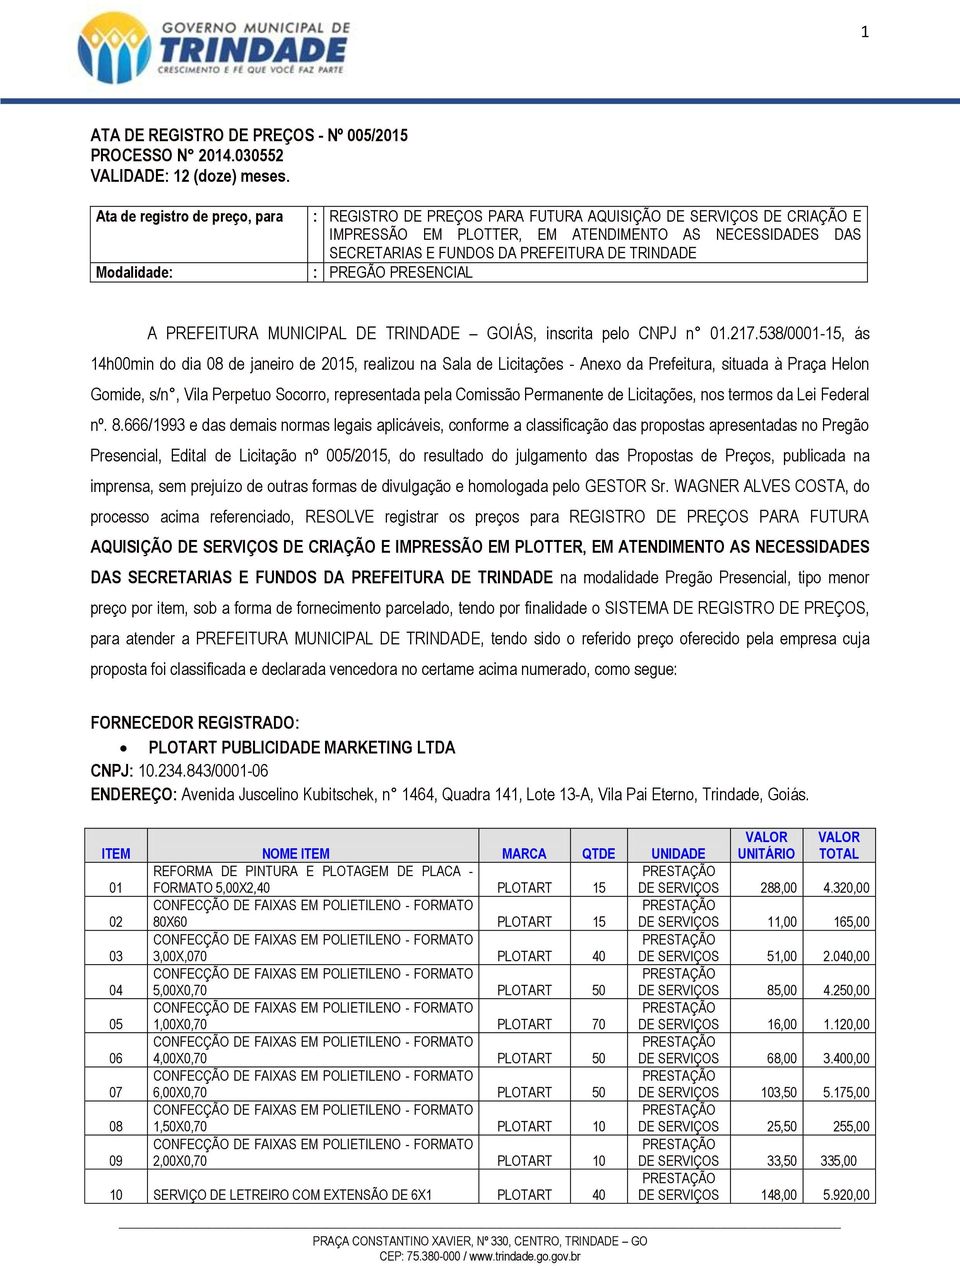 PREFEITURA DE TRINDADE : PREGÃO PRESENCIAL A PREFEITURA MUNICIPAL DE TRINDADE GOIÁS, inscrita pelo CNPJ n 01.217.